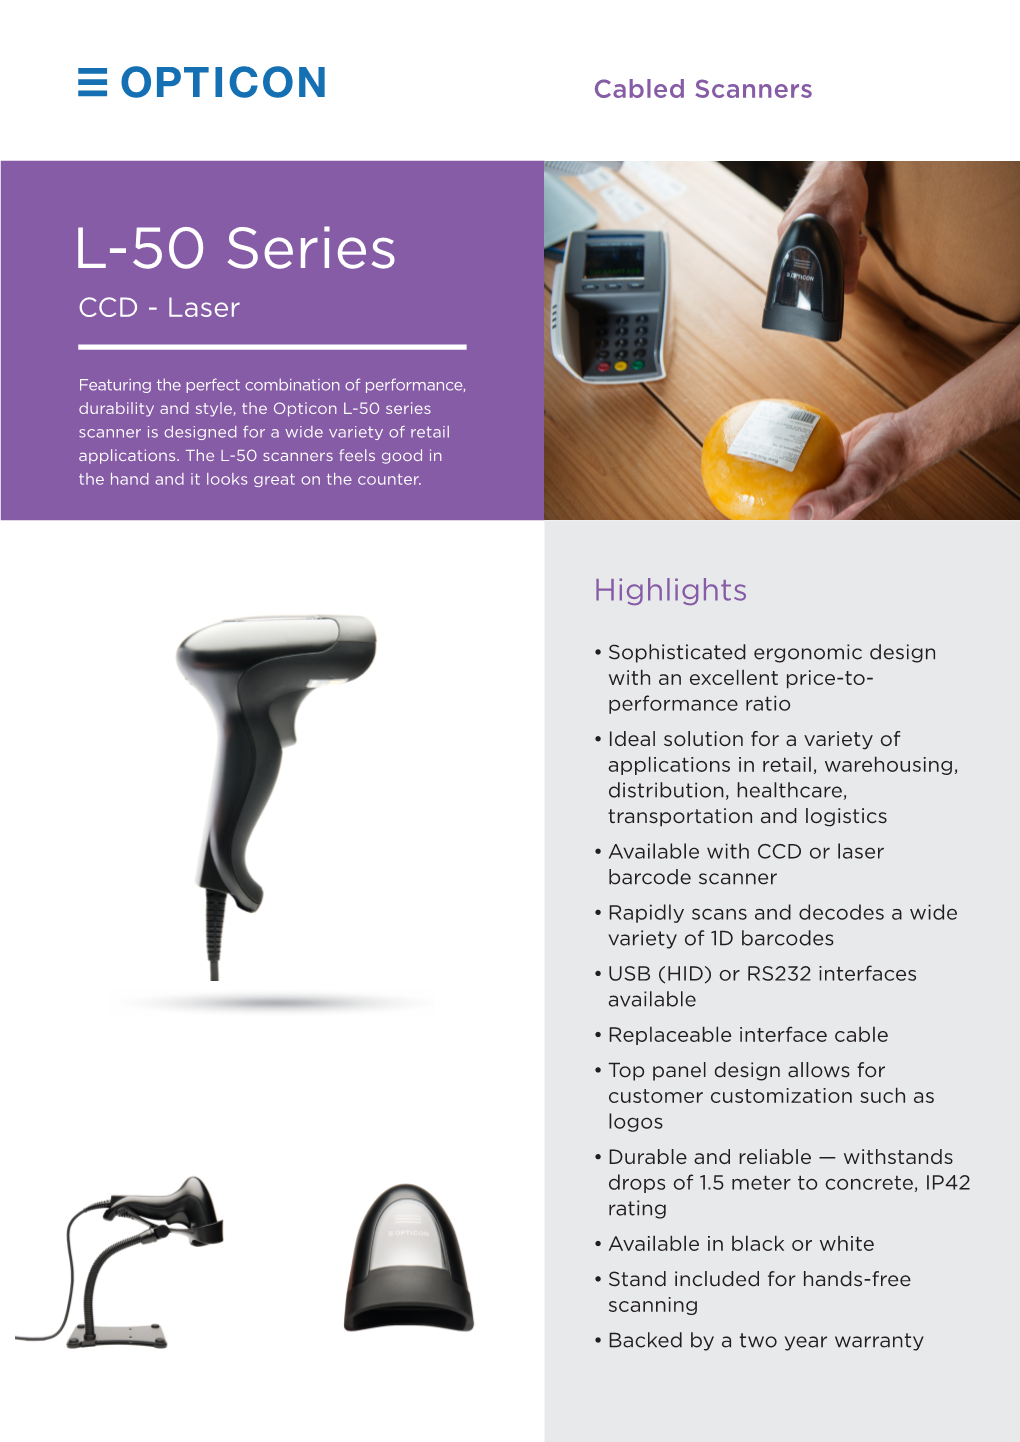 L-50 Series CCD - Laser